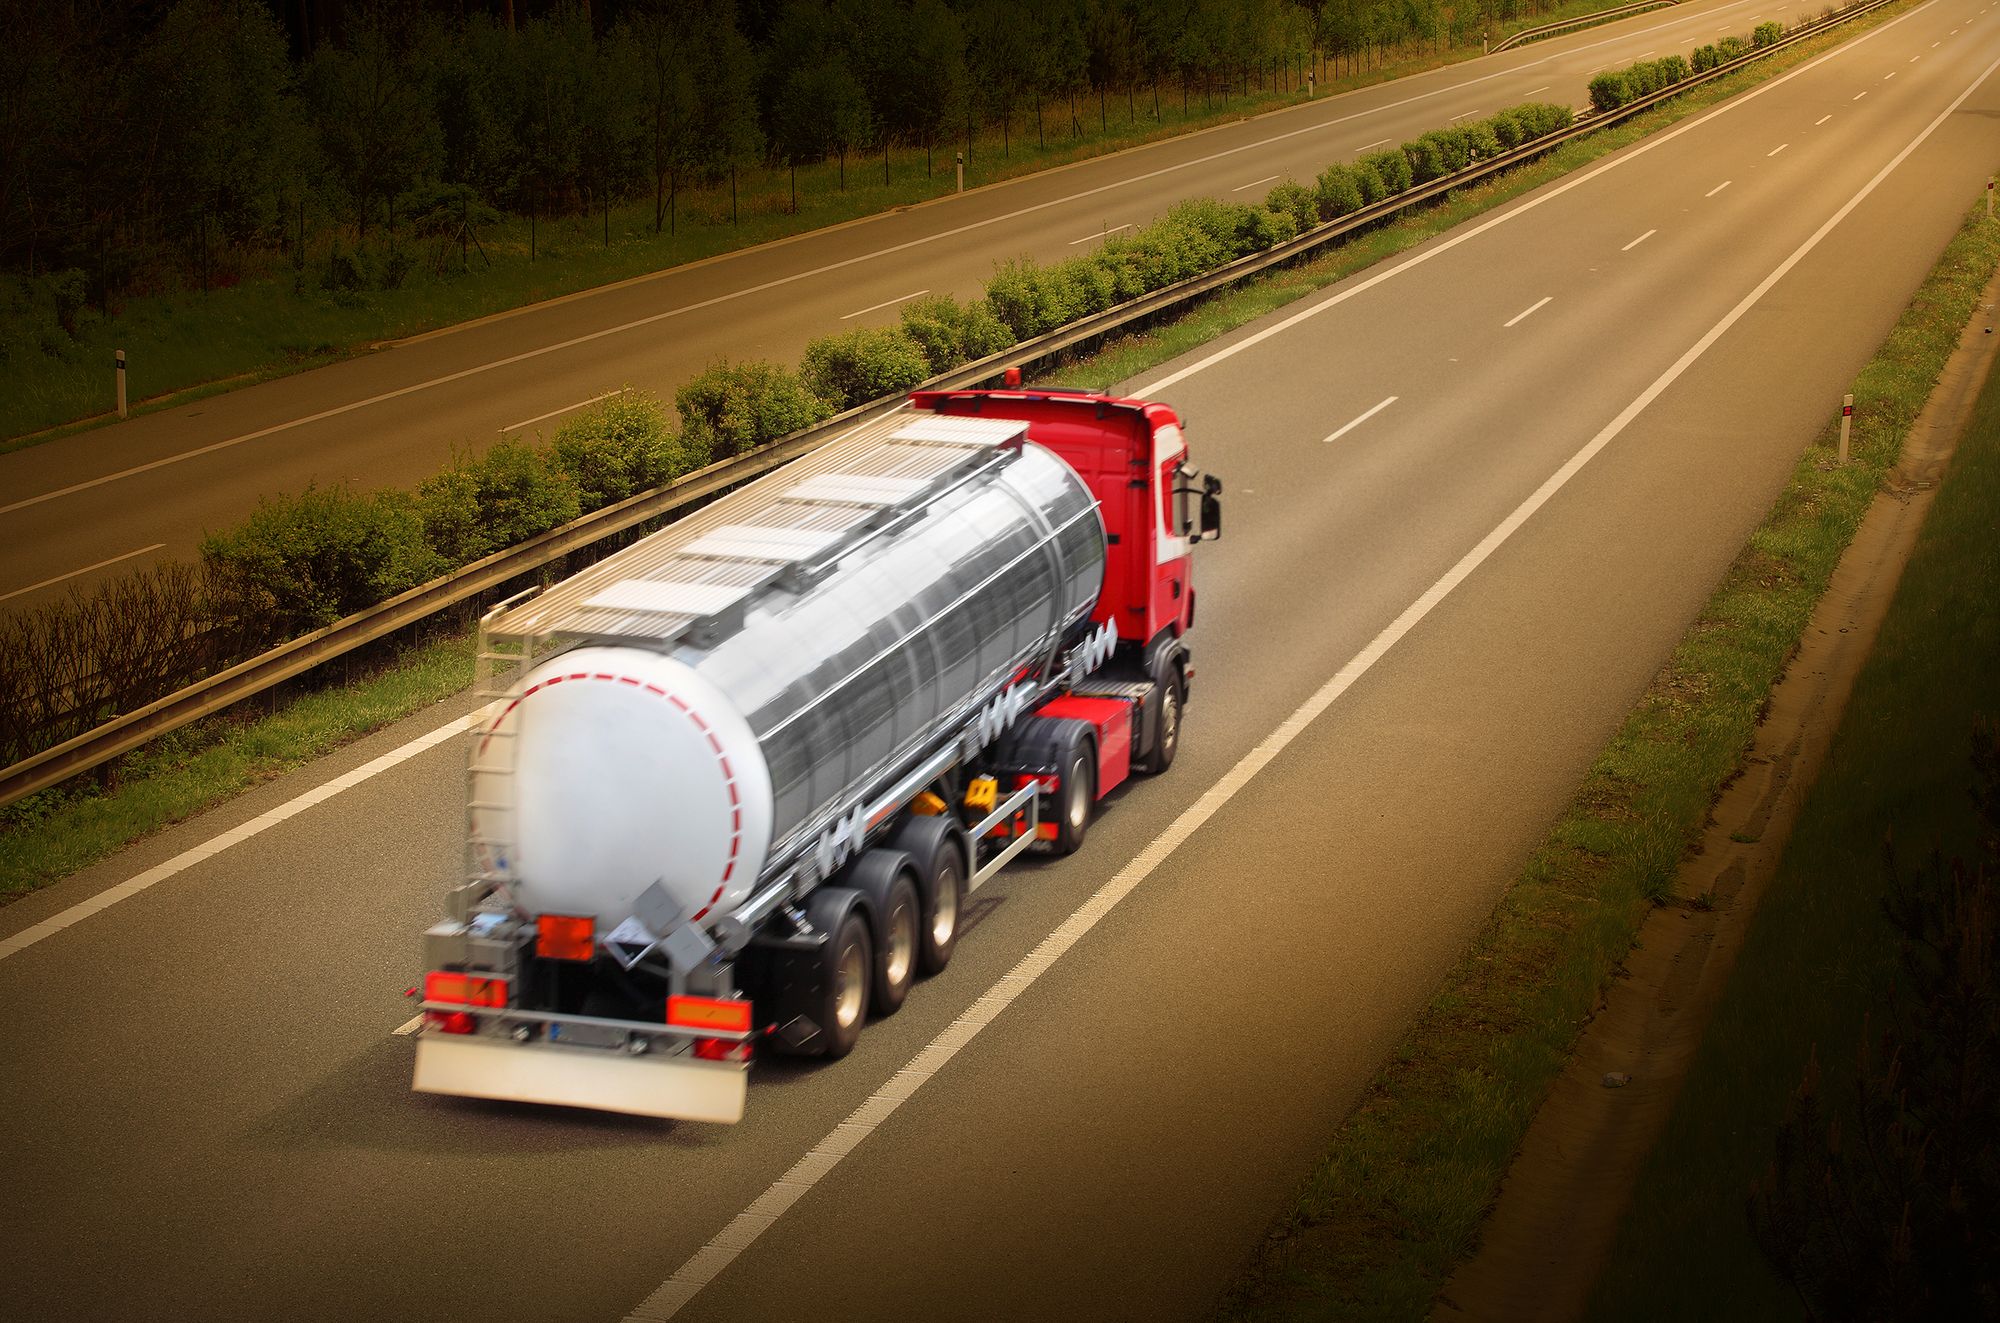 Praxair tanker truck drivers truckers highway - trucking independent contractors